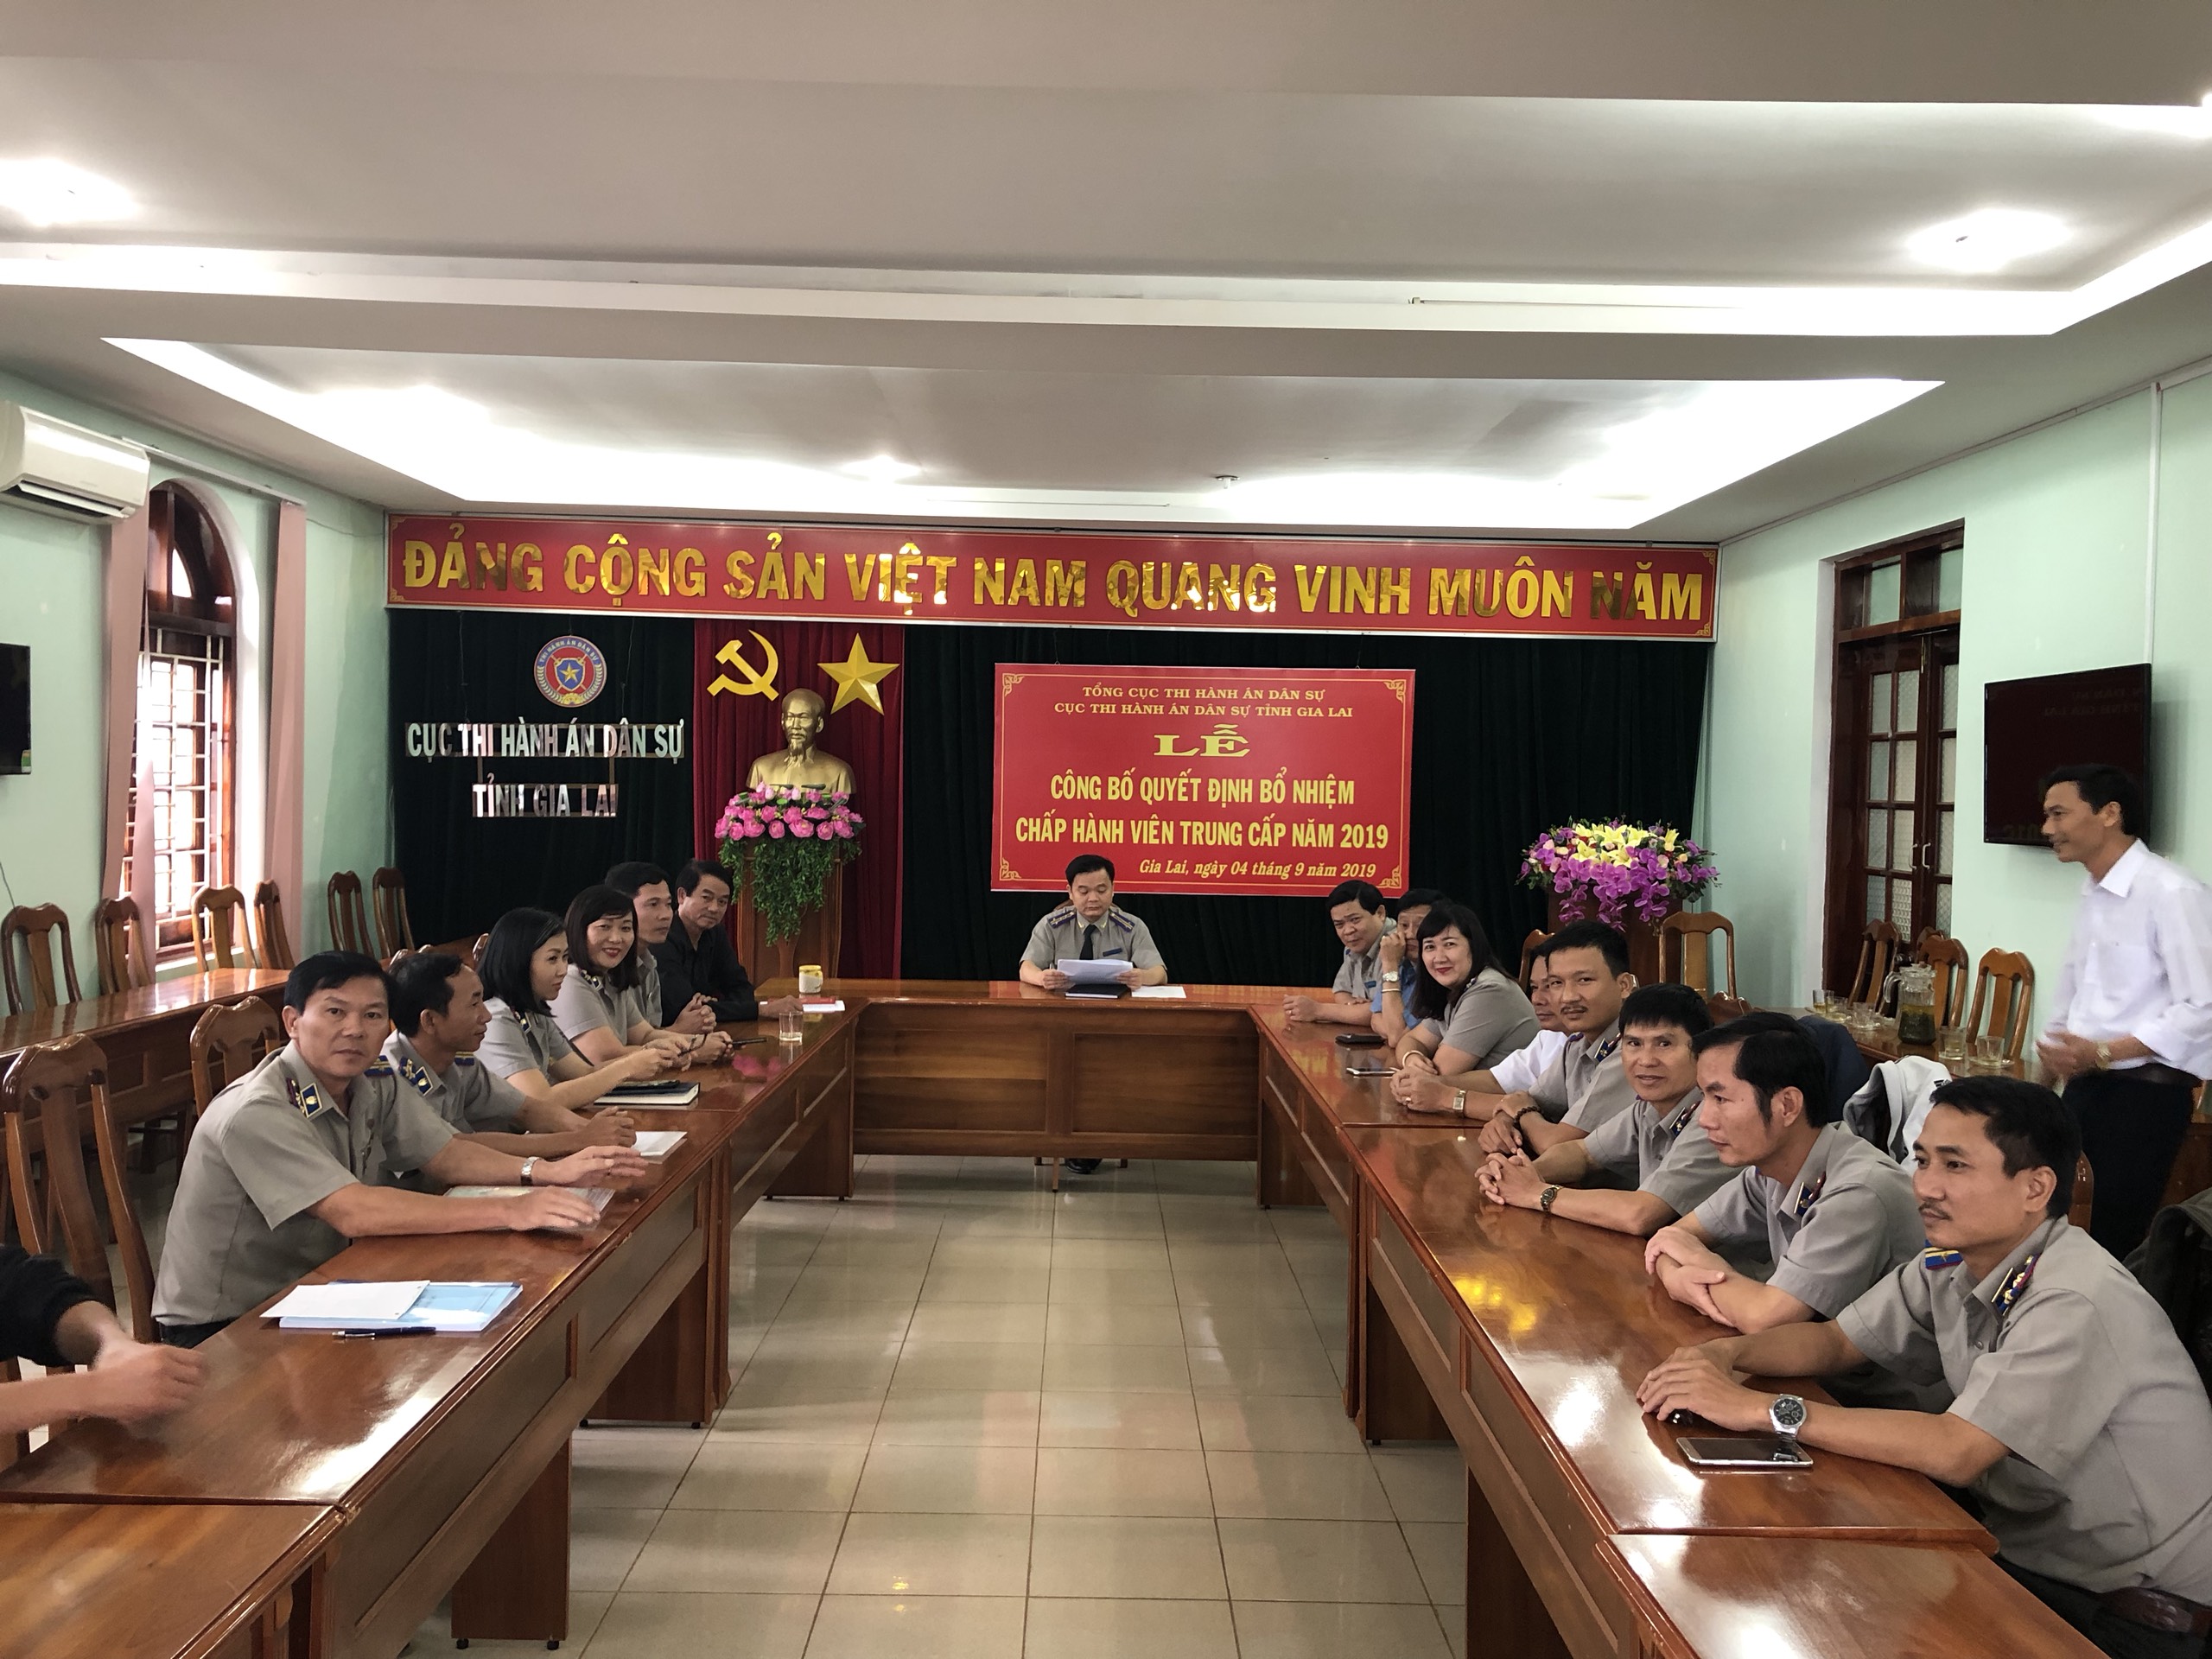 Cục THADS tỉnh Gia Lai tổ chức Lễ công bố Quyết định bổ nhiệm Chấp hành viên trung cấp